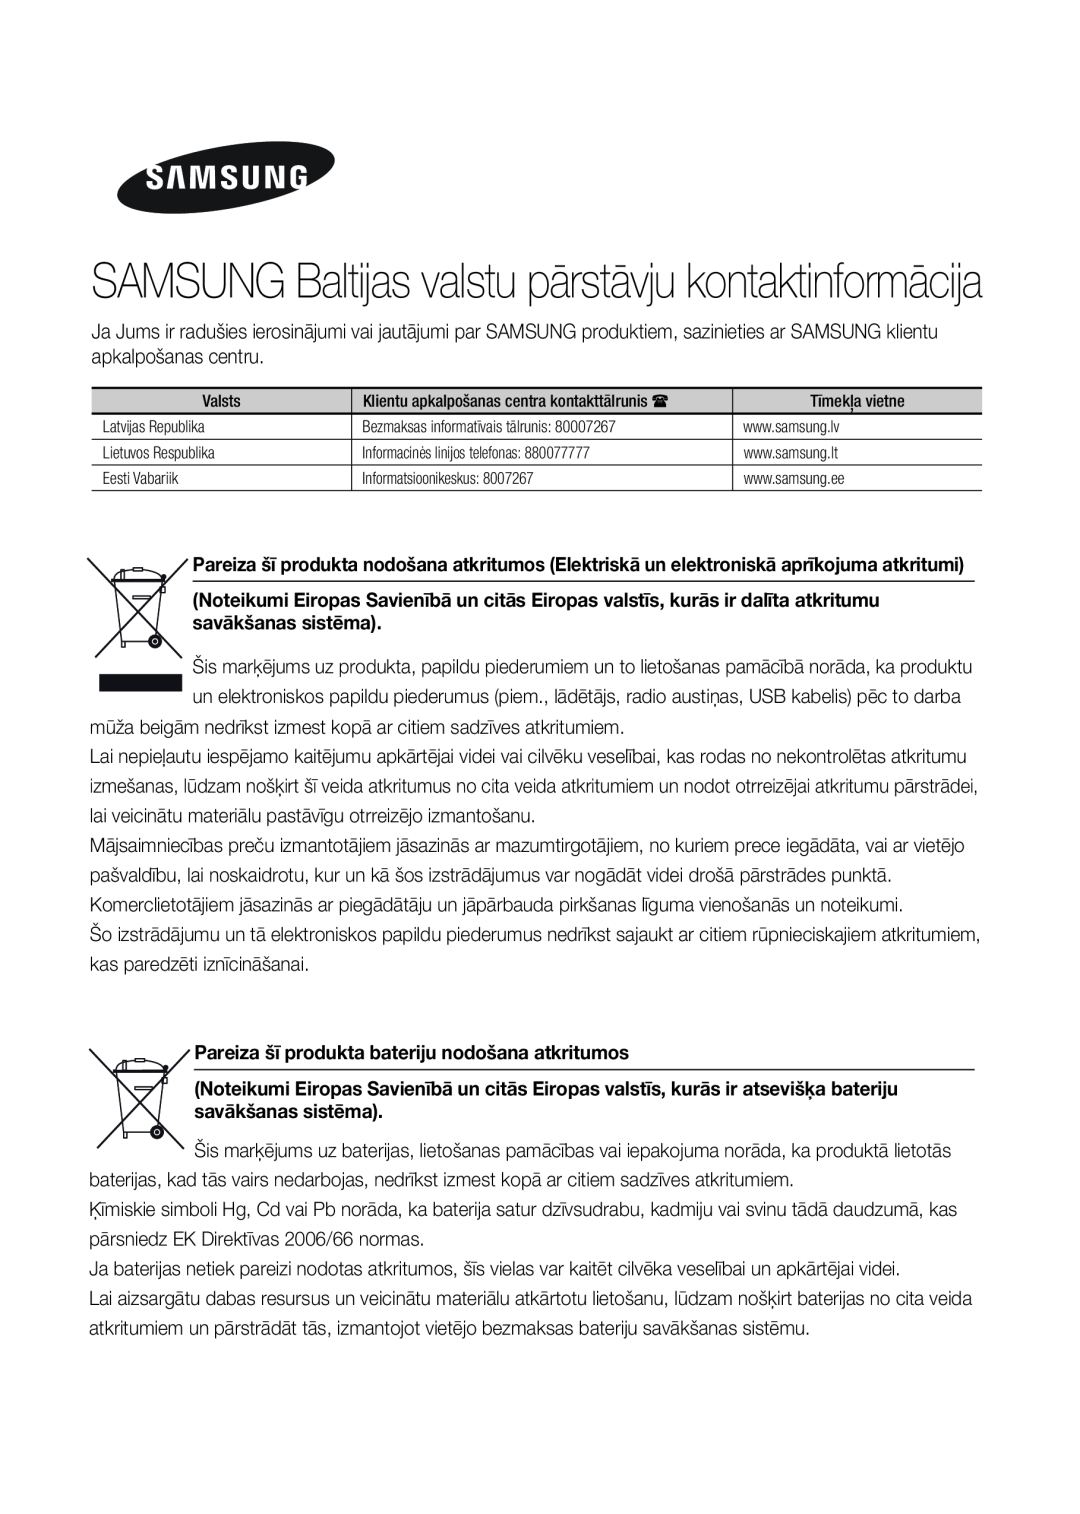 Samsung MX-HS8000/EN manual SAMSUNG Baltijas valstu pārstāvju kontaktinformācija 